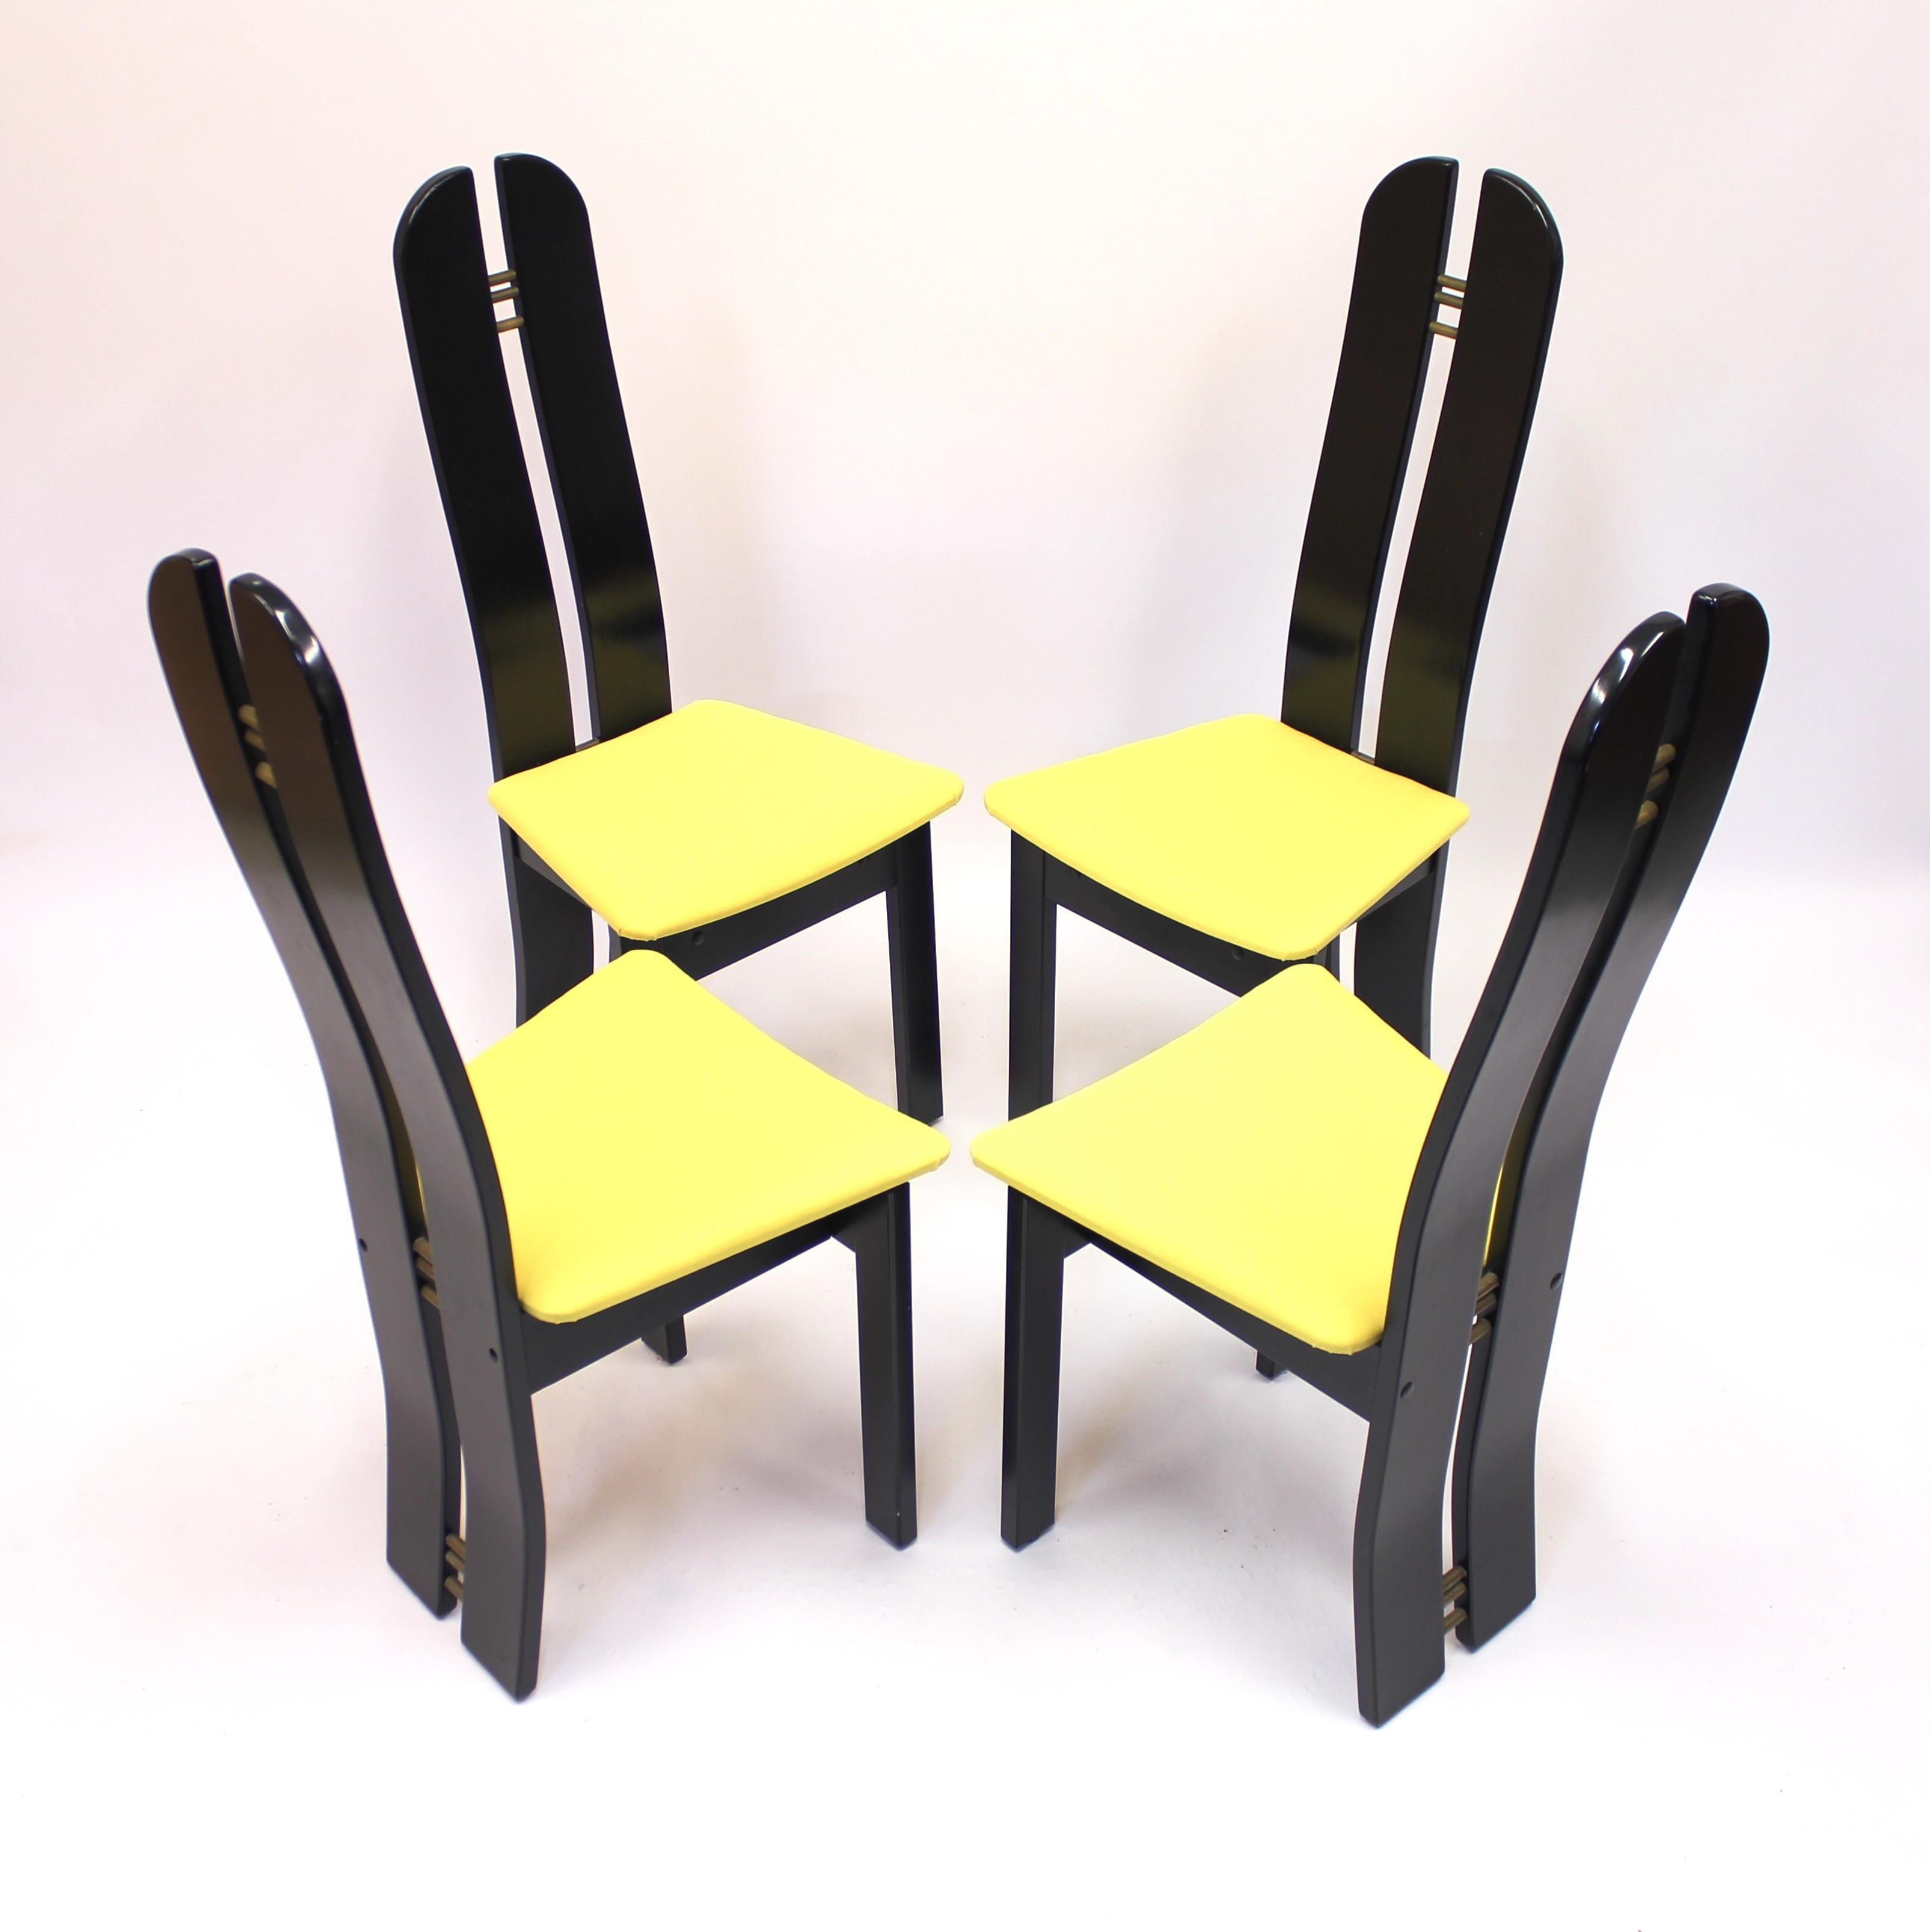 Danish Set of 4 High Back Postmodern Chairs Form Mørkøv Møbelindustri Aps, 1980s For Sale